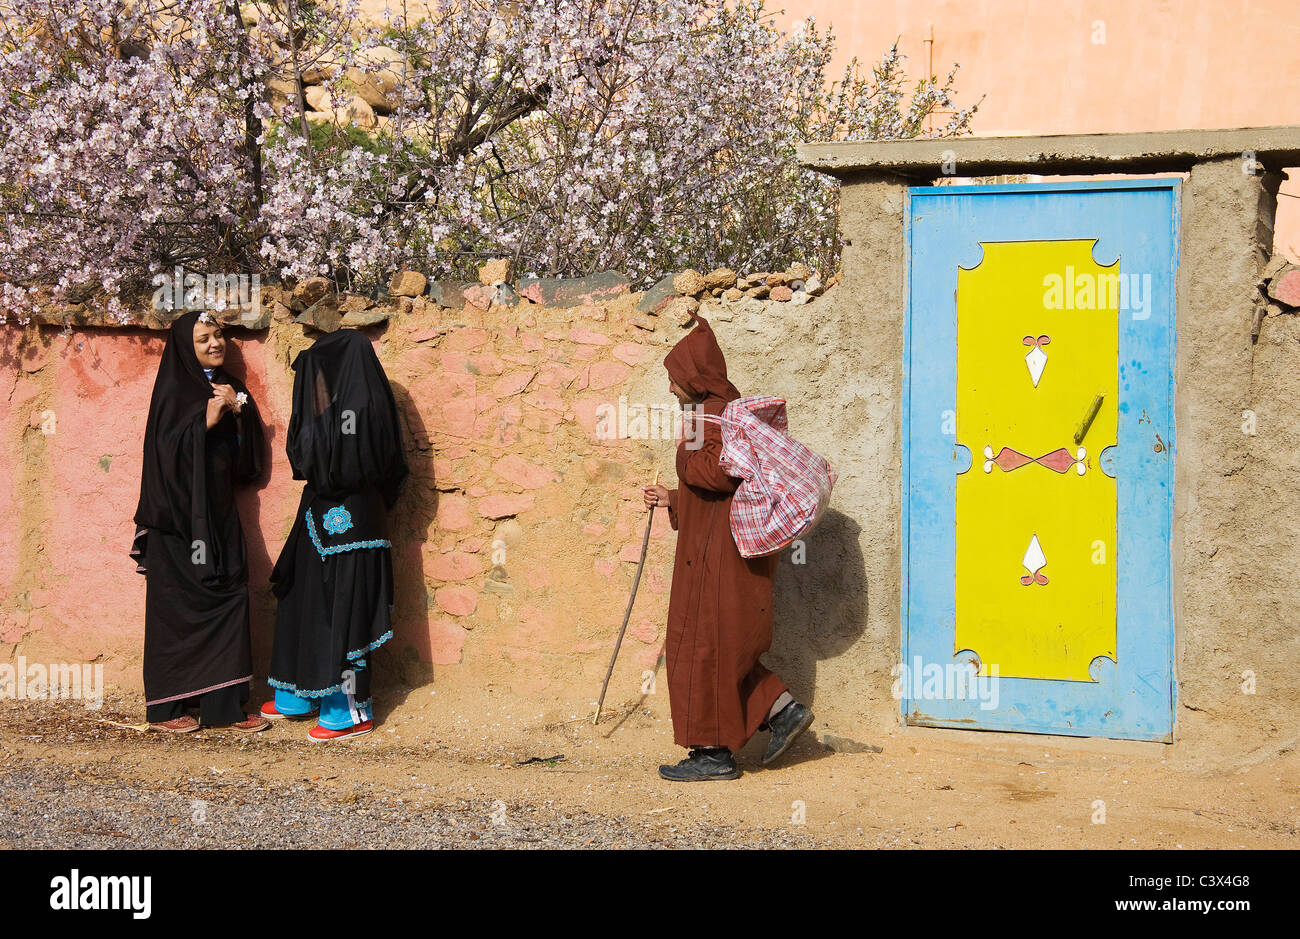 La chat donne berbere e Berber uomo passando in un villaggio vicino alla città di Tafraoute nella valle di Ameln, Marocco Foto Stock